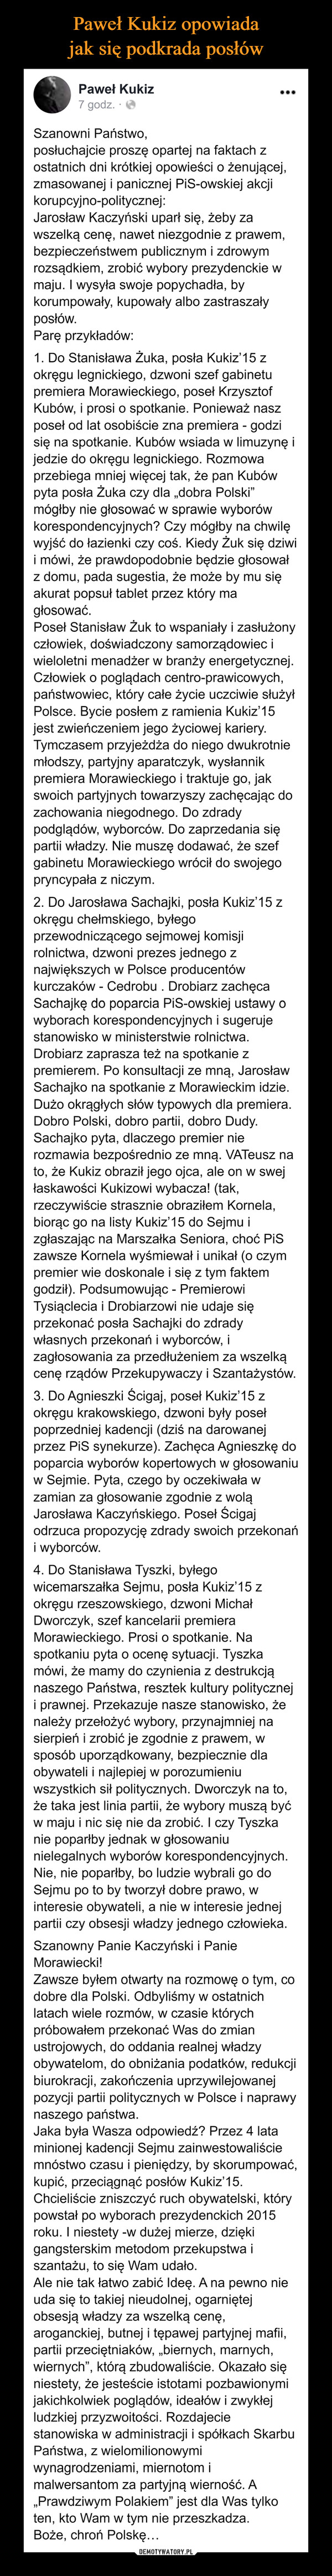  –  Paweł Kukiz opowiada jak siępodkrada posłówPaweł Kukiz...7 godz. · OSzanowni Państwo,posłuchajcie proszę opartej na faktach zostatnich dni krótkiej opowieści o żenującej,zmasowanej i panicznej PiS-owskiej akcjikorupcyjno-politycznej:Jarosław Kaczyński uparł się, żeby zawszelką cenę, nawet niezgodnie z prawem,bezpieczeństwem publicznym i zdrowymrozsądkiem, zrobić wybory prezydenckie wmaju. I wysyła swoje popychadła, bykorumpowały, kupowały albo zastraszałyposłów.Parę przykładów:1. Do Stanisława Żuka, posła Kukiz'15 zokręgu legnickiego, dzwoni szef gabinetupremiera Morawieckiego, poseł KrzysztofKubów, i prosi o spotkanie. Ponieważ naszposeł od lat osobiście zna premiera - godzisię na spotkanie. Kubów wsiada w limuzynę ijedzie do okręgu legnickiego. Rozmowaprzebiega mniej więcej tak, że pan Kubówpyta posła Żuka czy dla „dobra Polski"mógłby nie głosować w sprawie wyborówkorespondencyjnych? Czy mógłby na chwilęwyjść do łazienki czy coś. Kiedy Żuk się dziwii mówi, że prawdopodobnie będzie głosowałz domu, pada sugestia, że może by mu sięakurat popsuł tablet przez który magłosować.Poseł Stanisław Żuk to wspaniały i zasłużonyczłowiek, doświadczony samorządowiec iwieloletni menadżer w branży energetycznej.Człowiek o poglądach centro-prawicowych,państwowiec, który całe życie uczciwie służyłPolsce. Bycie posłem z ramienia Kukiz'15jest zwieńczeniem jego życiowej kariery.Tymczasem przyjeżdża do niego dwukrotniemłodszy, partyjny aparatczyk, wysłannikpremiera Morawieckiego i traktuje go, jakswoich partyjnych towarzyszy zachęcając dozachowania niegodnego. Do zdradypodglądów, wyborców. Do zaprzedania siępartii władzy. Nie muszę dodawać, że szefgabinetu Morawieckiego wrócił do swojegopryncypała z niczym.2. Do Jarosława Sachajki, posła Kukiz'15 zokręgu chełmskiego, byłegoprzewodniczącego sejmowej komisjirolnictwa, dzwoni prezes jednego znajwiększych w Polsce producentówkurczaków - Cedrobu . Drobiarz zachęcaSachajkę do poparcia PiS-owskiej ustawy owyborach korespondencyjnych i sugerujestanowisko w ministerstwie rolnictwa.Drobiarz zaprasza też na spotkanie zpremierem. Po konsultacji ze mną, JarosławSachajko na spotkanie z Morawieckim idzie.Dużo okrągłych słów typowych dla premiera.Dobro Polski, dobro partii, dobro Dudy.Sachajko pyta, dlaczego premier nierozmawia bezpośrednio ze mną. VATeusz nato, że Kukiz obraził jego ojca, ale on w swejłaskawości Kukizowi wybacza! (tak,rzeczywiście strasznie obraziłem Kornela,biorąc go na listy Kukiz'15 do Sejmu izgłaszając na Marszałka Seniora, choć PiSzawsze Kornela wyśmiewał i unikał (o czympremier wie doskonale i się z tym faktemgodził). Podsumowując - PremierowiTysiąclecia i Drobiarzowi nie udaje sięprzekonać posła Sachajki do zdradywłasnych przekonań i wyborców, izagłosowania za przedłużeniem za wszelkącenę rządów Przekupywaczy i Szantażystów.3. Do Agnieszki Ścigaj, poseł Kukiz'15 zokręgu krakowskiego, dzwoni były posełpoprzedniej kadencji (dziś na darowanejprzez PiS synekurze). Zachęca Agnieszkę dopoparcia wyborów kopertowych w głosowaniuw Sejmie. Pyta, czego by oczekiwałazamian za głosowanie zgodnie z woląJarosława Kaczyńskiego. Poseł Ścigajodrzuca propozycję zdrady swoich przekonańi wyborców.4. Do Stanisława Tyszki, byłegowicemarszałka Sejmu, posła Kukiz'15 zokręgu rzeszowskiego, dzwoni MichałDworczyk, szef kancelarii premieraMorawieckiego. Prosi o spotkanie. Naspotkaniu pyta o ocenę sytuacji. Tyszkamówi, że mamy do czynienia z destrukcjąnaszego Państwa, resztek kultury polityczneji prawnej. Przekazuje nasze stanowisko, żenależy przełożyć wybory, przynajmniej nasierpień i zrobić je zgodnie z prawem, wsposób uporządkowany, bezpiecznie dlaobywateli i najlepiej w porozumieniuwszystkich sił politycznych. Dworczyk na to,że taka jest linia partii, że wybory muszą byćw maju i nic się nie da zrobić. I czy Tyszkanie poparłby jednak w głosowaniunielegalnych wyborów korespondencyjnych.Nie, nie poparłby, bo ludzie wybrali go doSejmu po to by tworzył dobre prawo, winteresie obywateli, a nie w interesie jednejpartii czy obsesji władzy jednego człowieka.Szanowny Panie Kaczyński i PanieMorawiecki!Zawsze byłem otwarty na rozmowę o tym, codobre dla Polski. Odbyliśmy w ostatnichlatach wiele rozmów, w czasie którychpróbowałem przekonać Was do zmianustrojowych, do oddania realnej władzyobywatelom, do obniżania podatków, redukcjibiurokracji, zakończenia uprzywilejowanejpozycji partii politycznych w Polsce i naprawynaszego państwa.Jaka była Wasza odpowiedź? Przez 4 lataminionej kadencji Sejmu zainwestowaliściemnóstwo czasu i pieniędzy, by skorumpować,kupić, przeciągnąć posłów Kukiz'15.Chcieliście zniszczyć ruch obywatelski, którypowstał po wyborach prezydenckich 2015roku. I niestety -w dużej mierze, dziękigangsterskim metodom przekupstwa iszantażu, to się Wam udało.Ale nie tak łatwo zabić Ideę. A na pewno nieuda się to takiej nieudolnej, ogarniętejobsesją władzy za wszelką cenę,aroganckiej, butnej i tępawej partyjnej mafii,partii przeciętniaków, „biernych, marnych,wiernych", którą zbudowaliście. Okazało sięniestety, że jesteście istotami pozbawionymijakichkolwiek poglądów, ideałów i zwykłejludzkiej przyzwoitości. Rozdajeciestanowiska w administracji i spółkach SkarbuPaństwa, z wielomilionowymiwynagrodzeniami, miernotom imalwersantom za partyjną wierność. A„Prawdziwym Polakiem" jest dla Was tylkoten, kto Wam w tym nie przeszkadza.Boże, chroń Polskę...